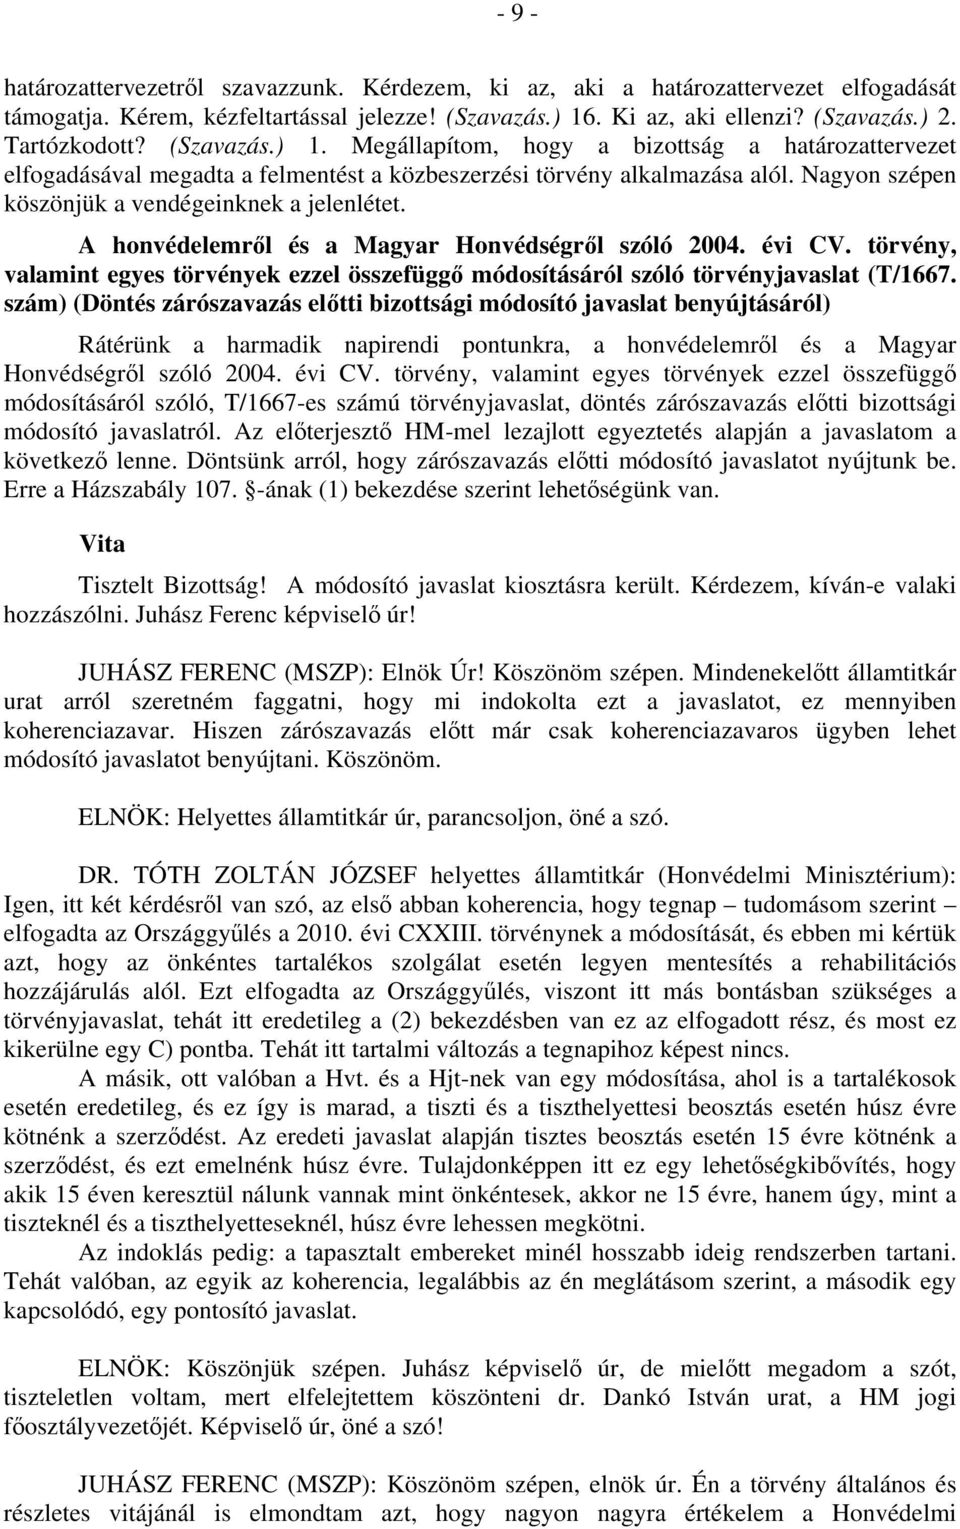 A honvédelemről és a Magyar Honvédségről szóló 2004. évi CV. törvény, valamint egyes törvények ezzel összefüggő módosításáról szóló törvényjavaslat (T/1667.